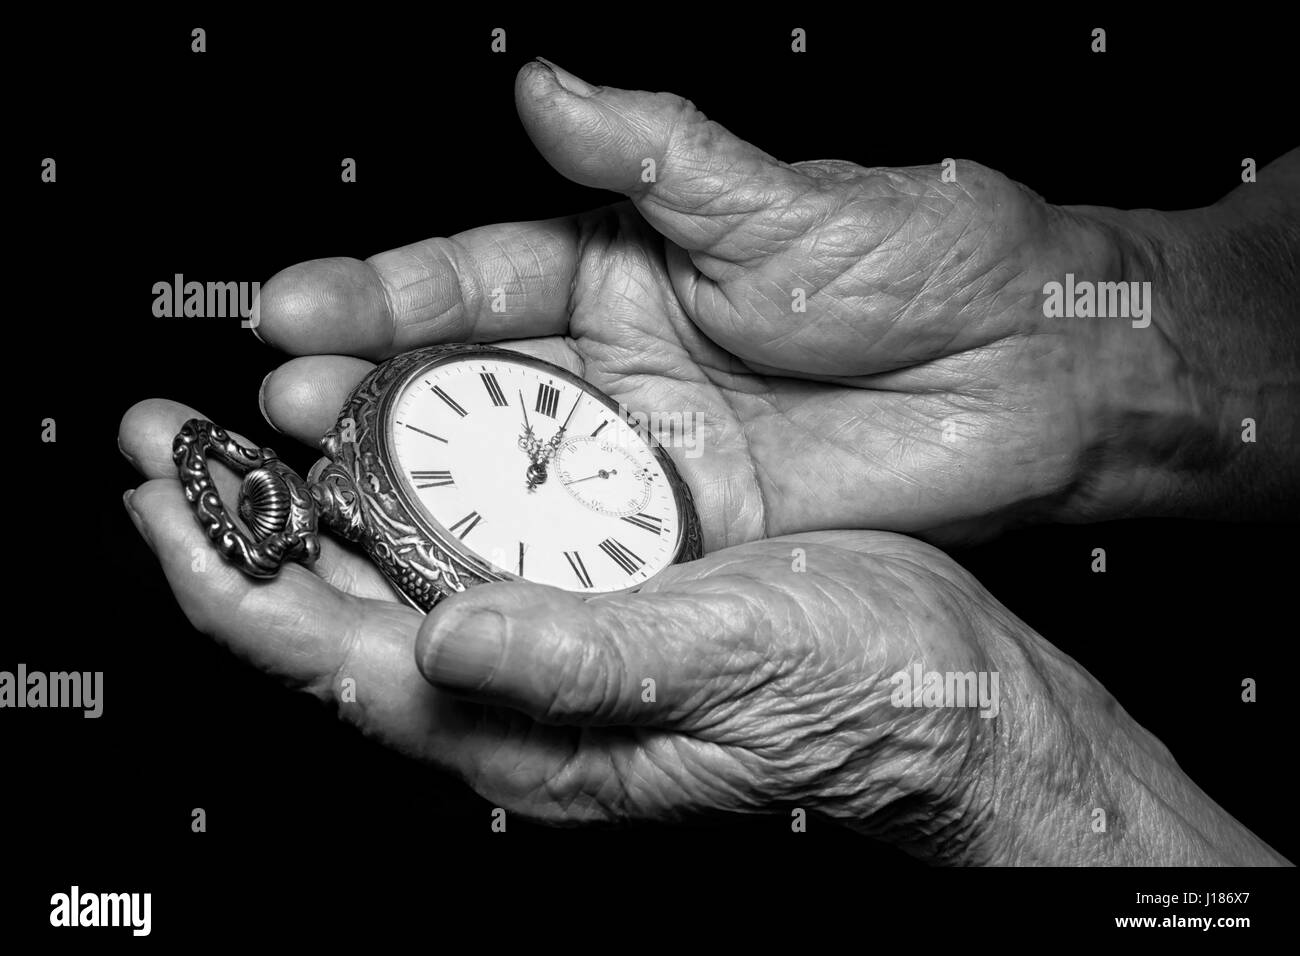 Ältere Frau Hände halten alte Uhr. Probleme, Senioren-Alter und Strom der Zeit Thema Altern. Schwarz / weiß Foto auf schwarzem Hintergrund Stockfoto